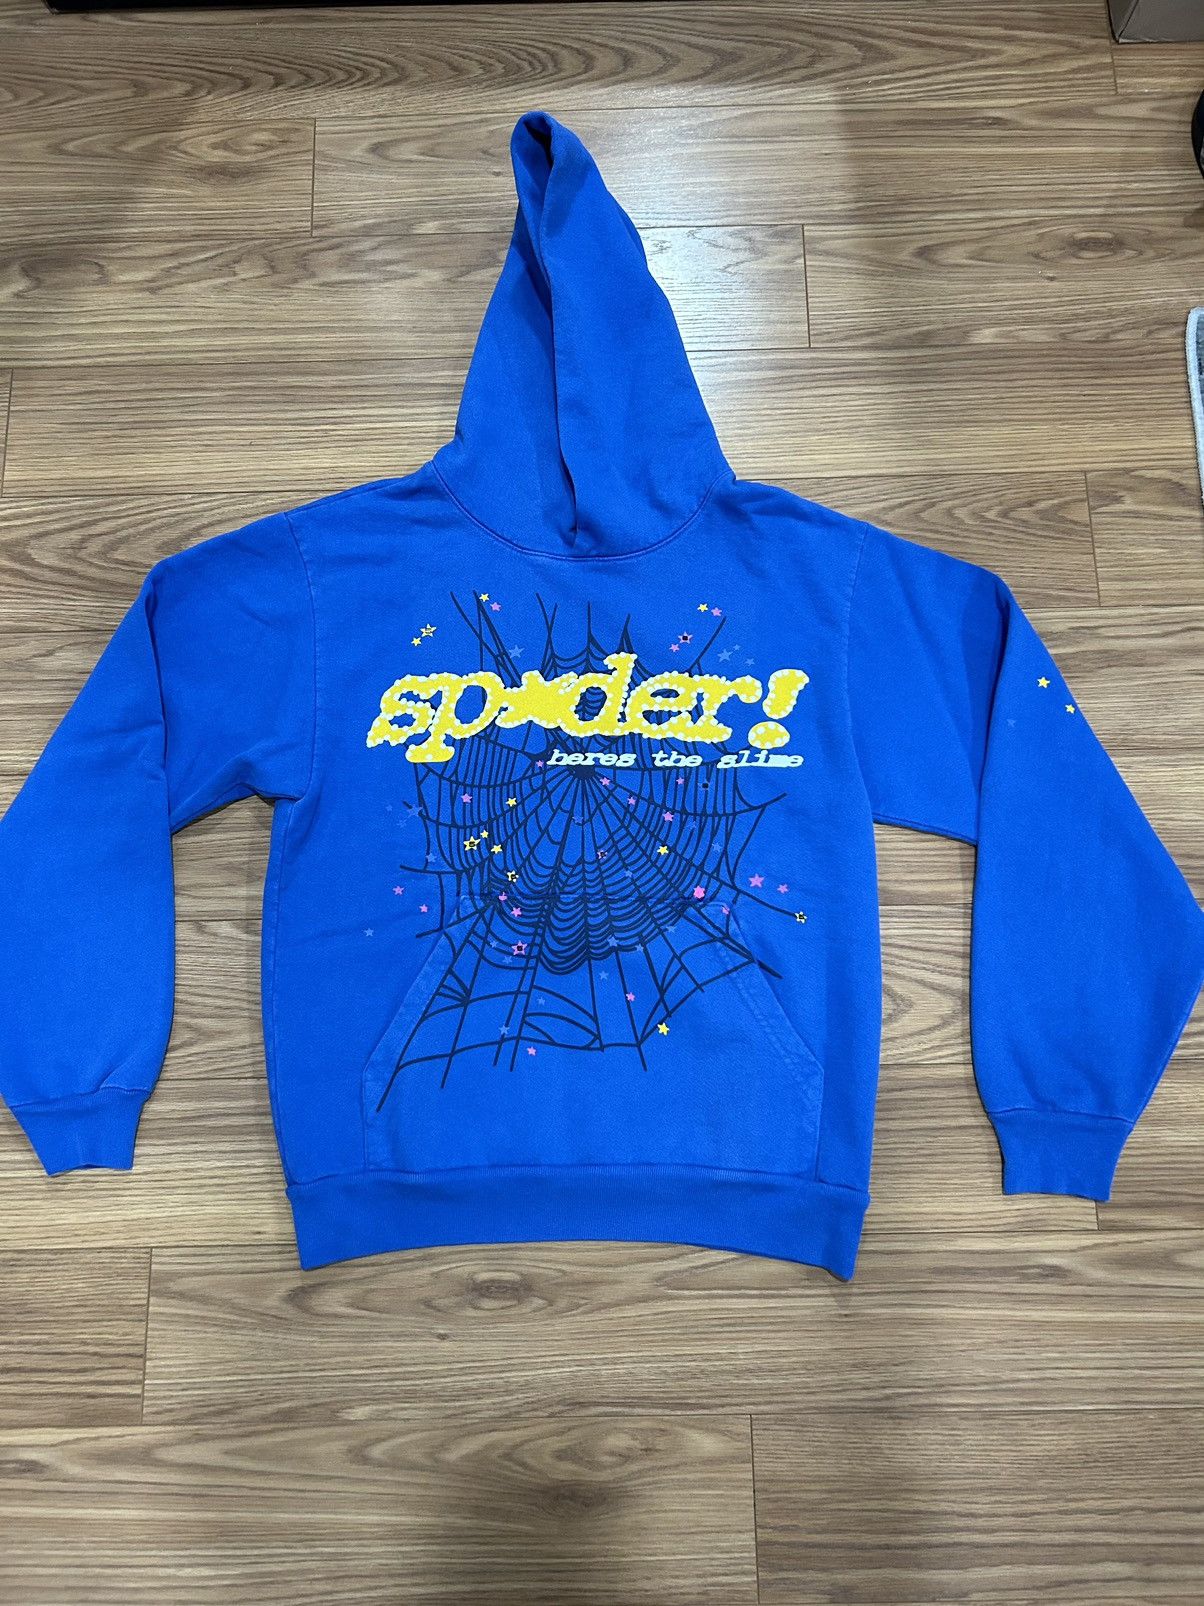 Spider Worldwide TC Blue Sp5der Hoodie | Grailed